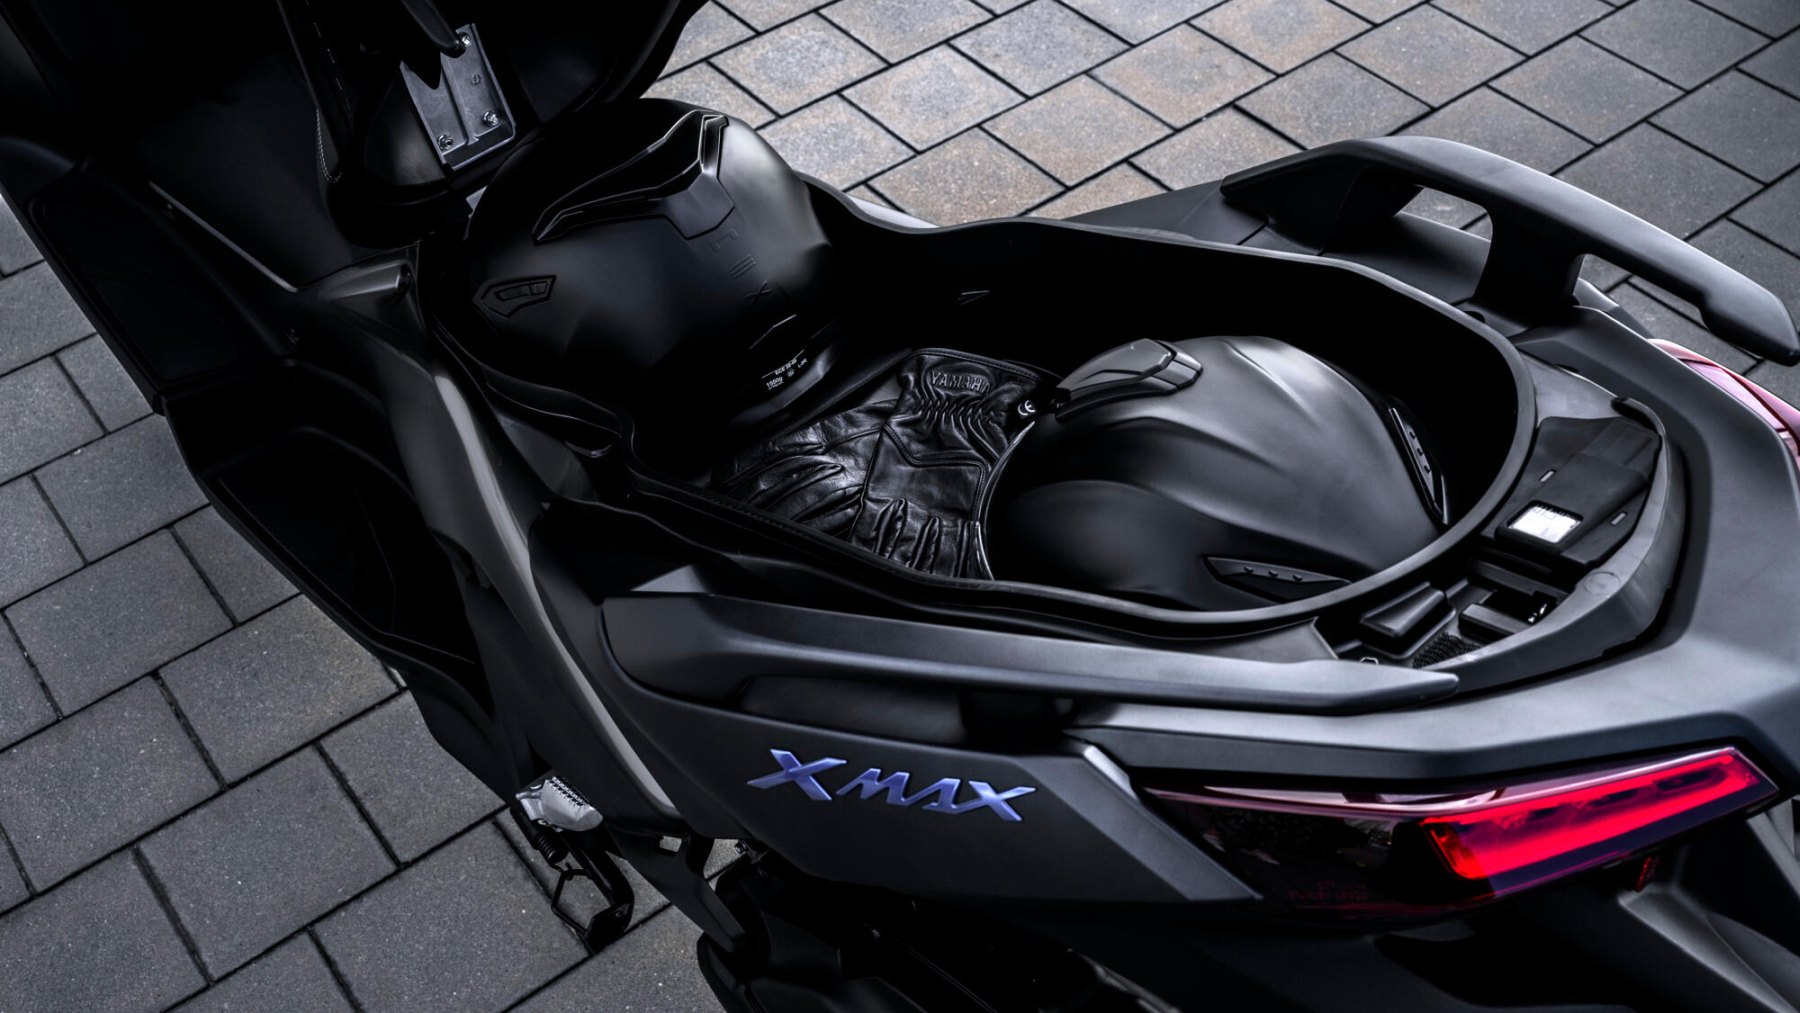 Vista trasera-lateral Yamaha X-Max 125cc que muestra su diseño aerodinámico y acabados premium.